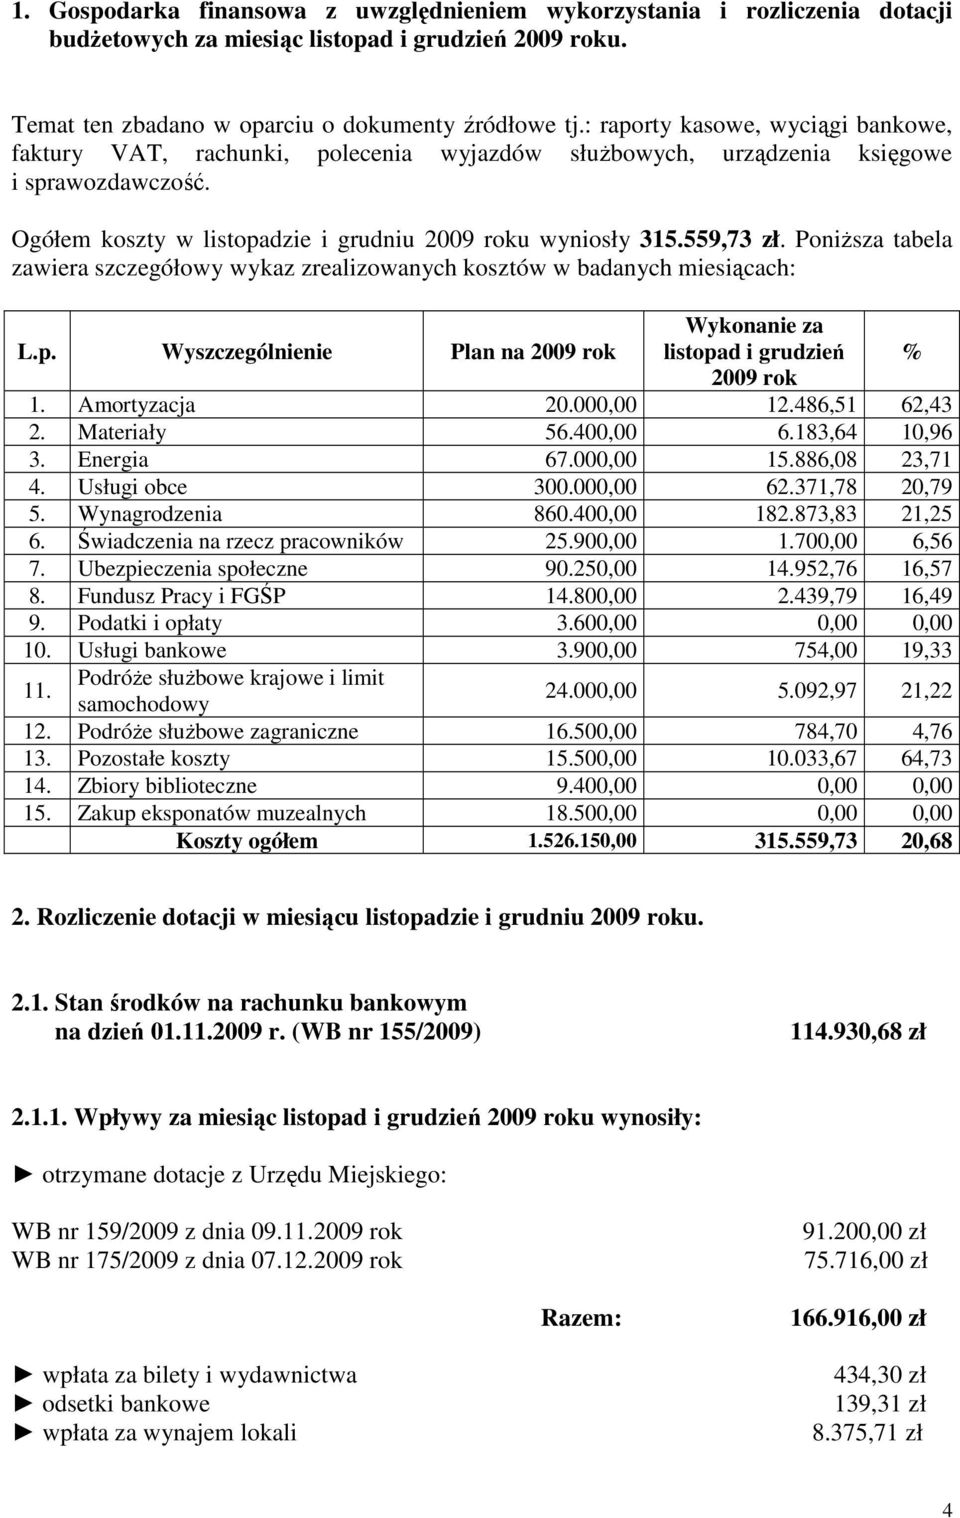 Poniższa tabela zawiera szczegółowy wykaz zrealizowanych kosztów w badanych miesiącach: L.p. Wyszczególnienie Plan na 2009 rok Wykonanie za listopad i grudzień % 2009 rok 1. Amortyzacja 20.000,00 12.